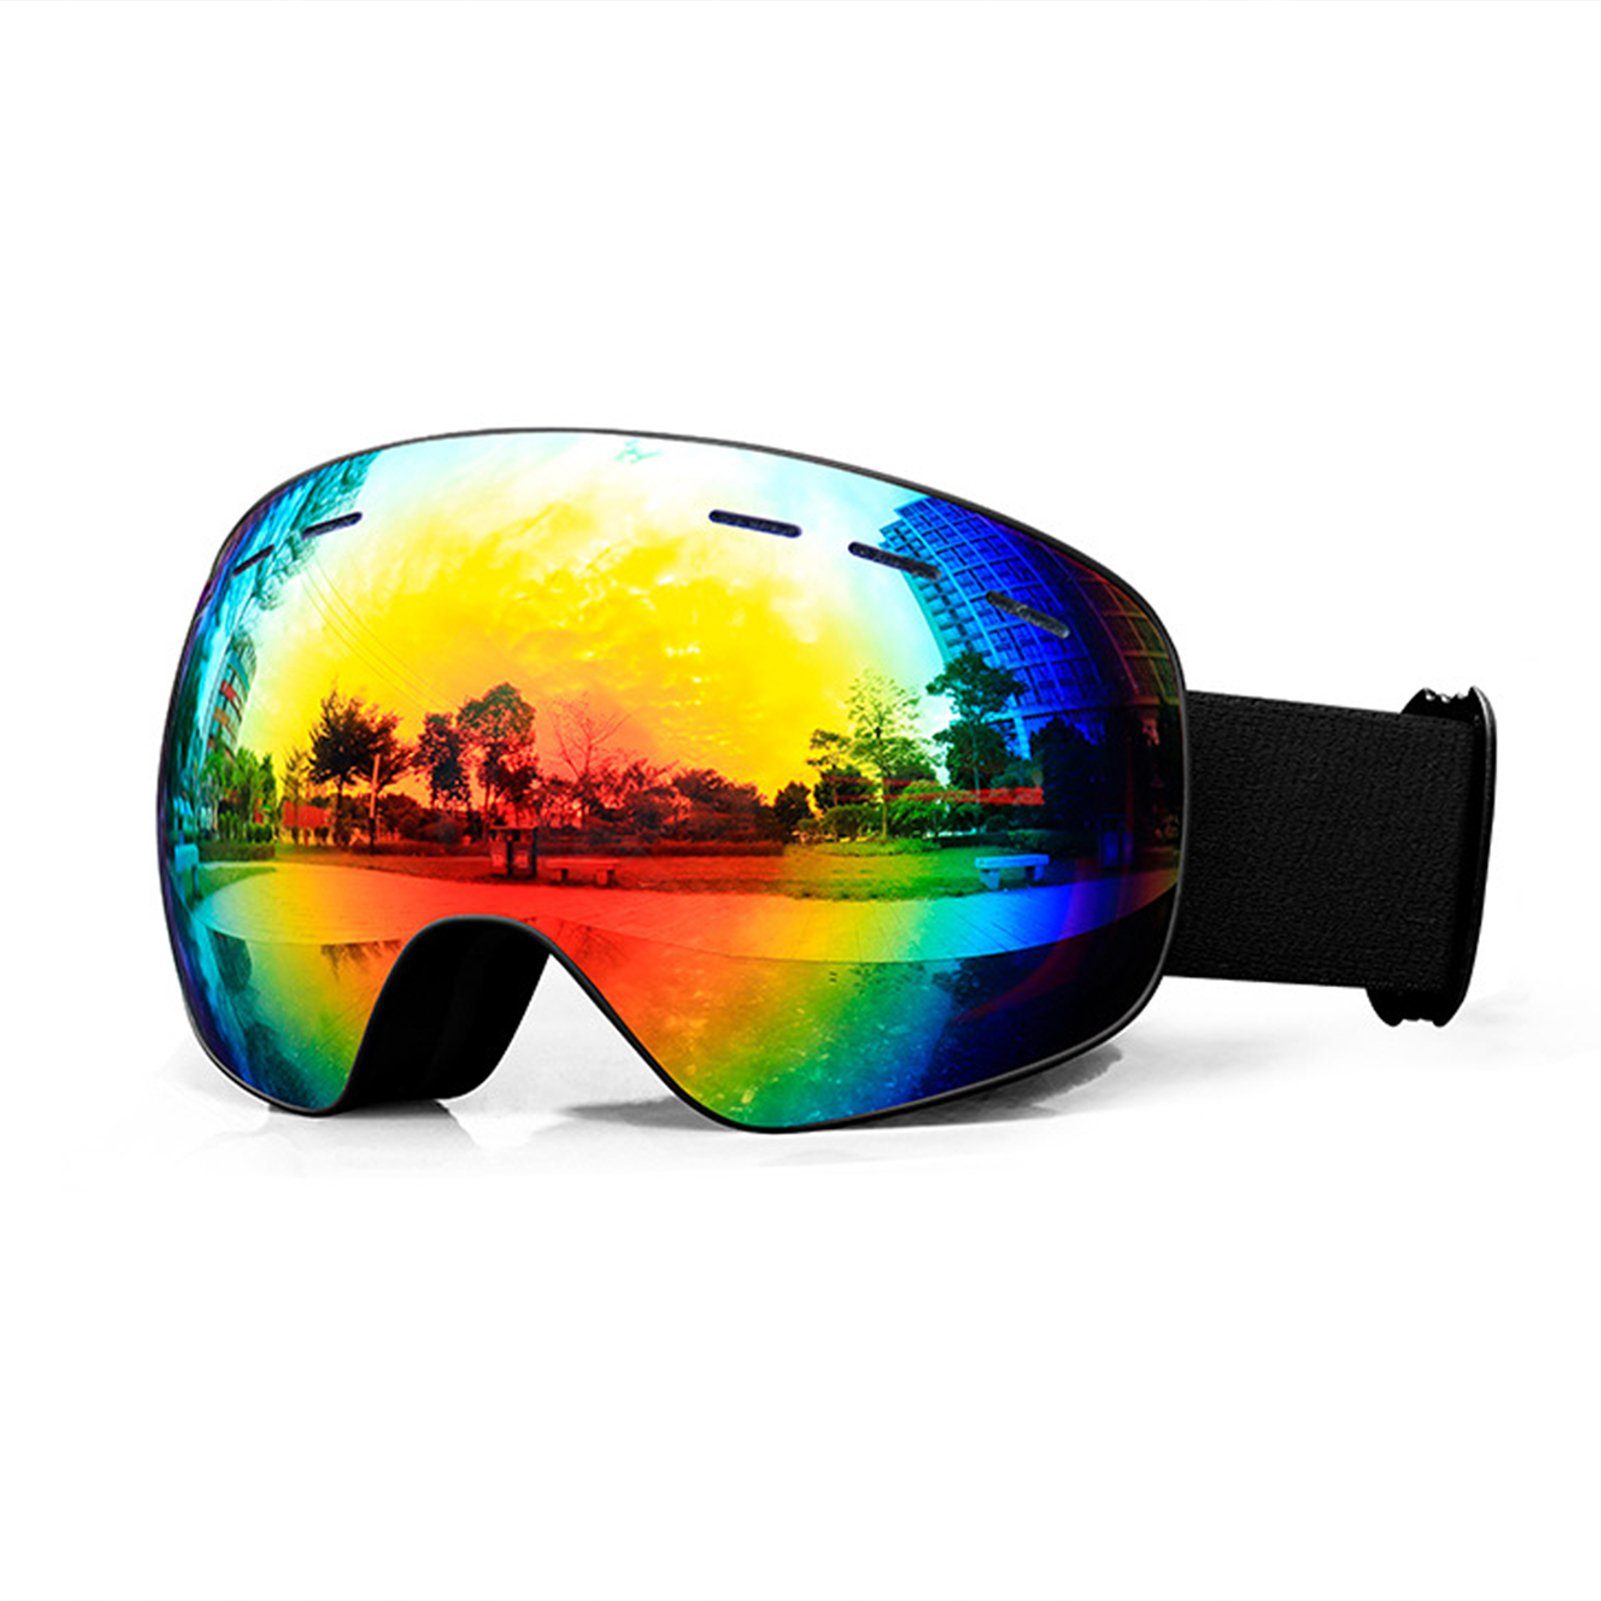 Blusmart Skibrille HD View Ski-Snowboard-Brille, Bequeme Winddichte Schneebrille Für 1